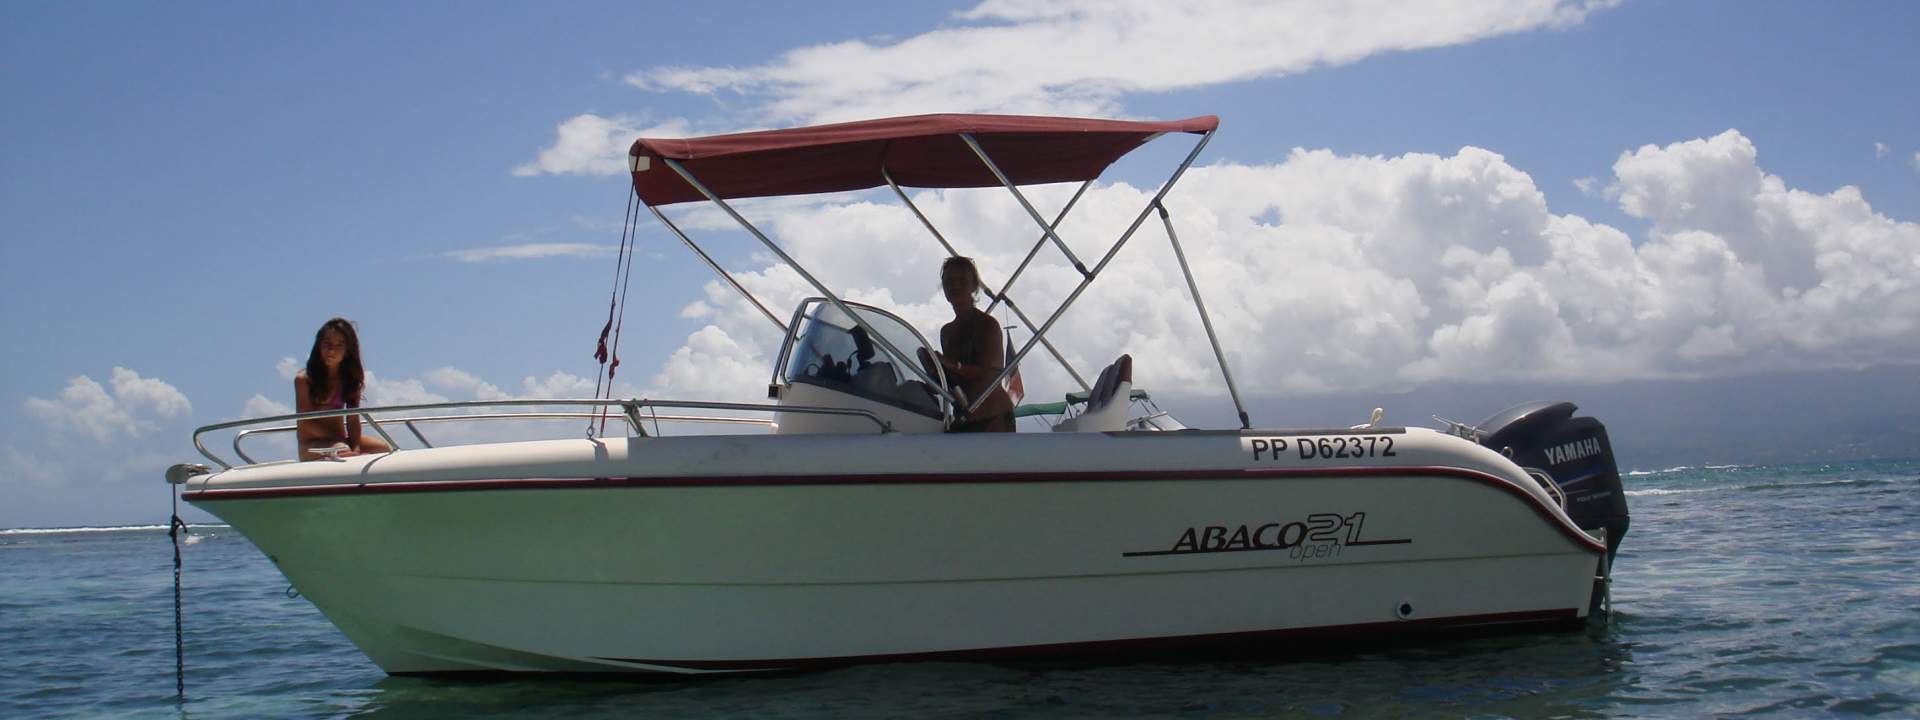 Моторная яхта Abaco 21